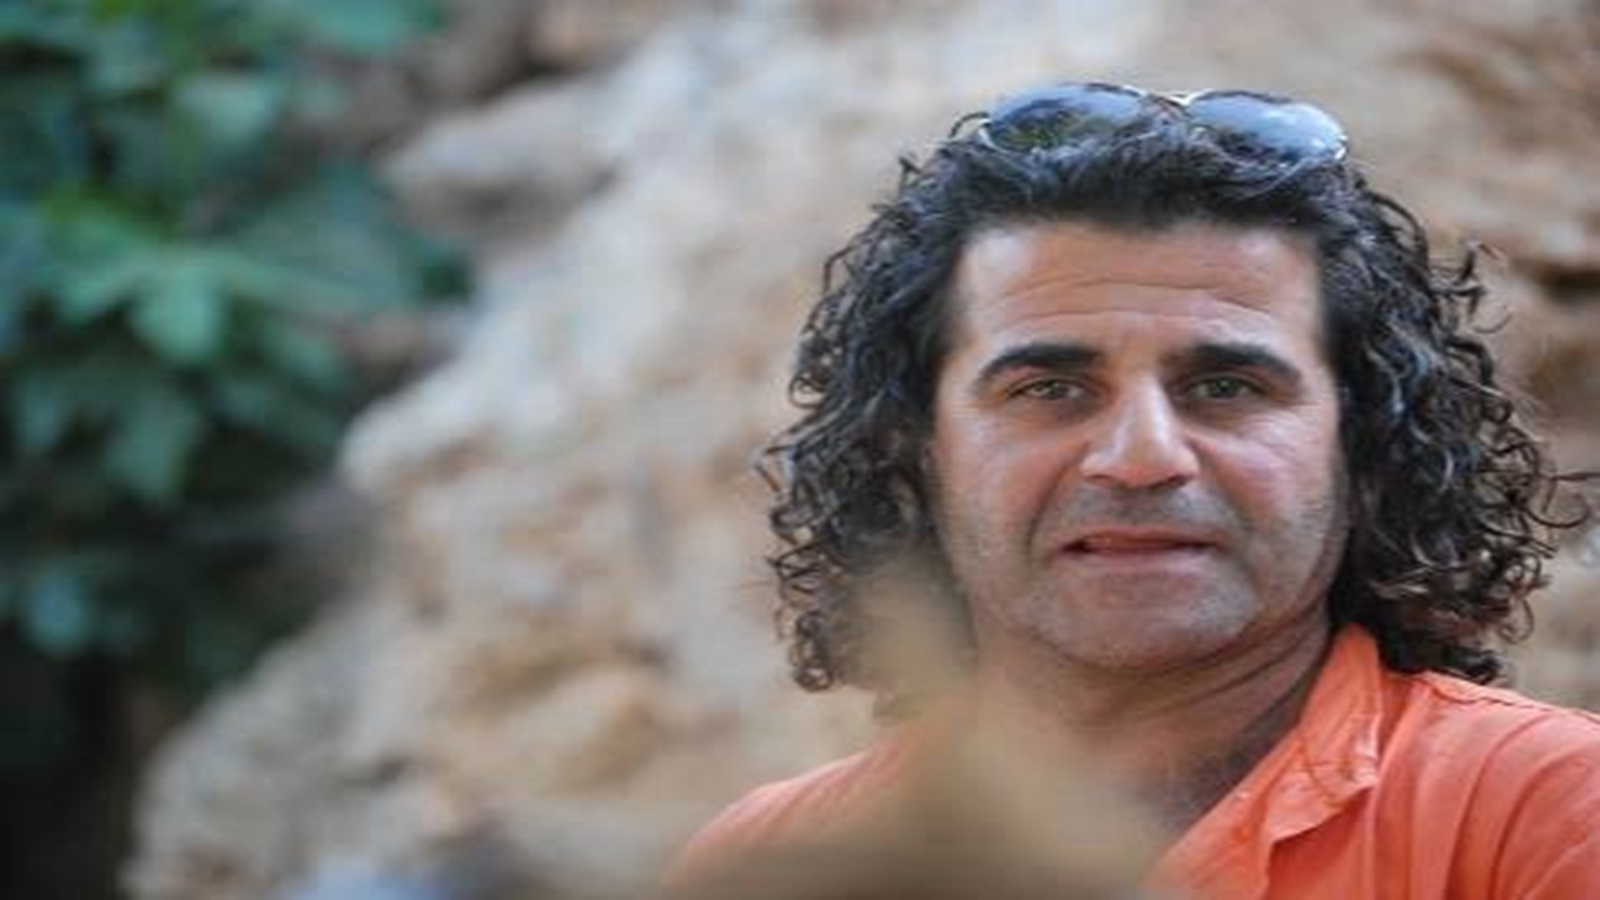 إدانة لاحتجاز النظام السوري الشاعر ناصر بندق وإخفائه قسرياً قرابة عشرة أعوام وتسجيله كمتوفي في دوائر السجل المدني